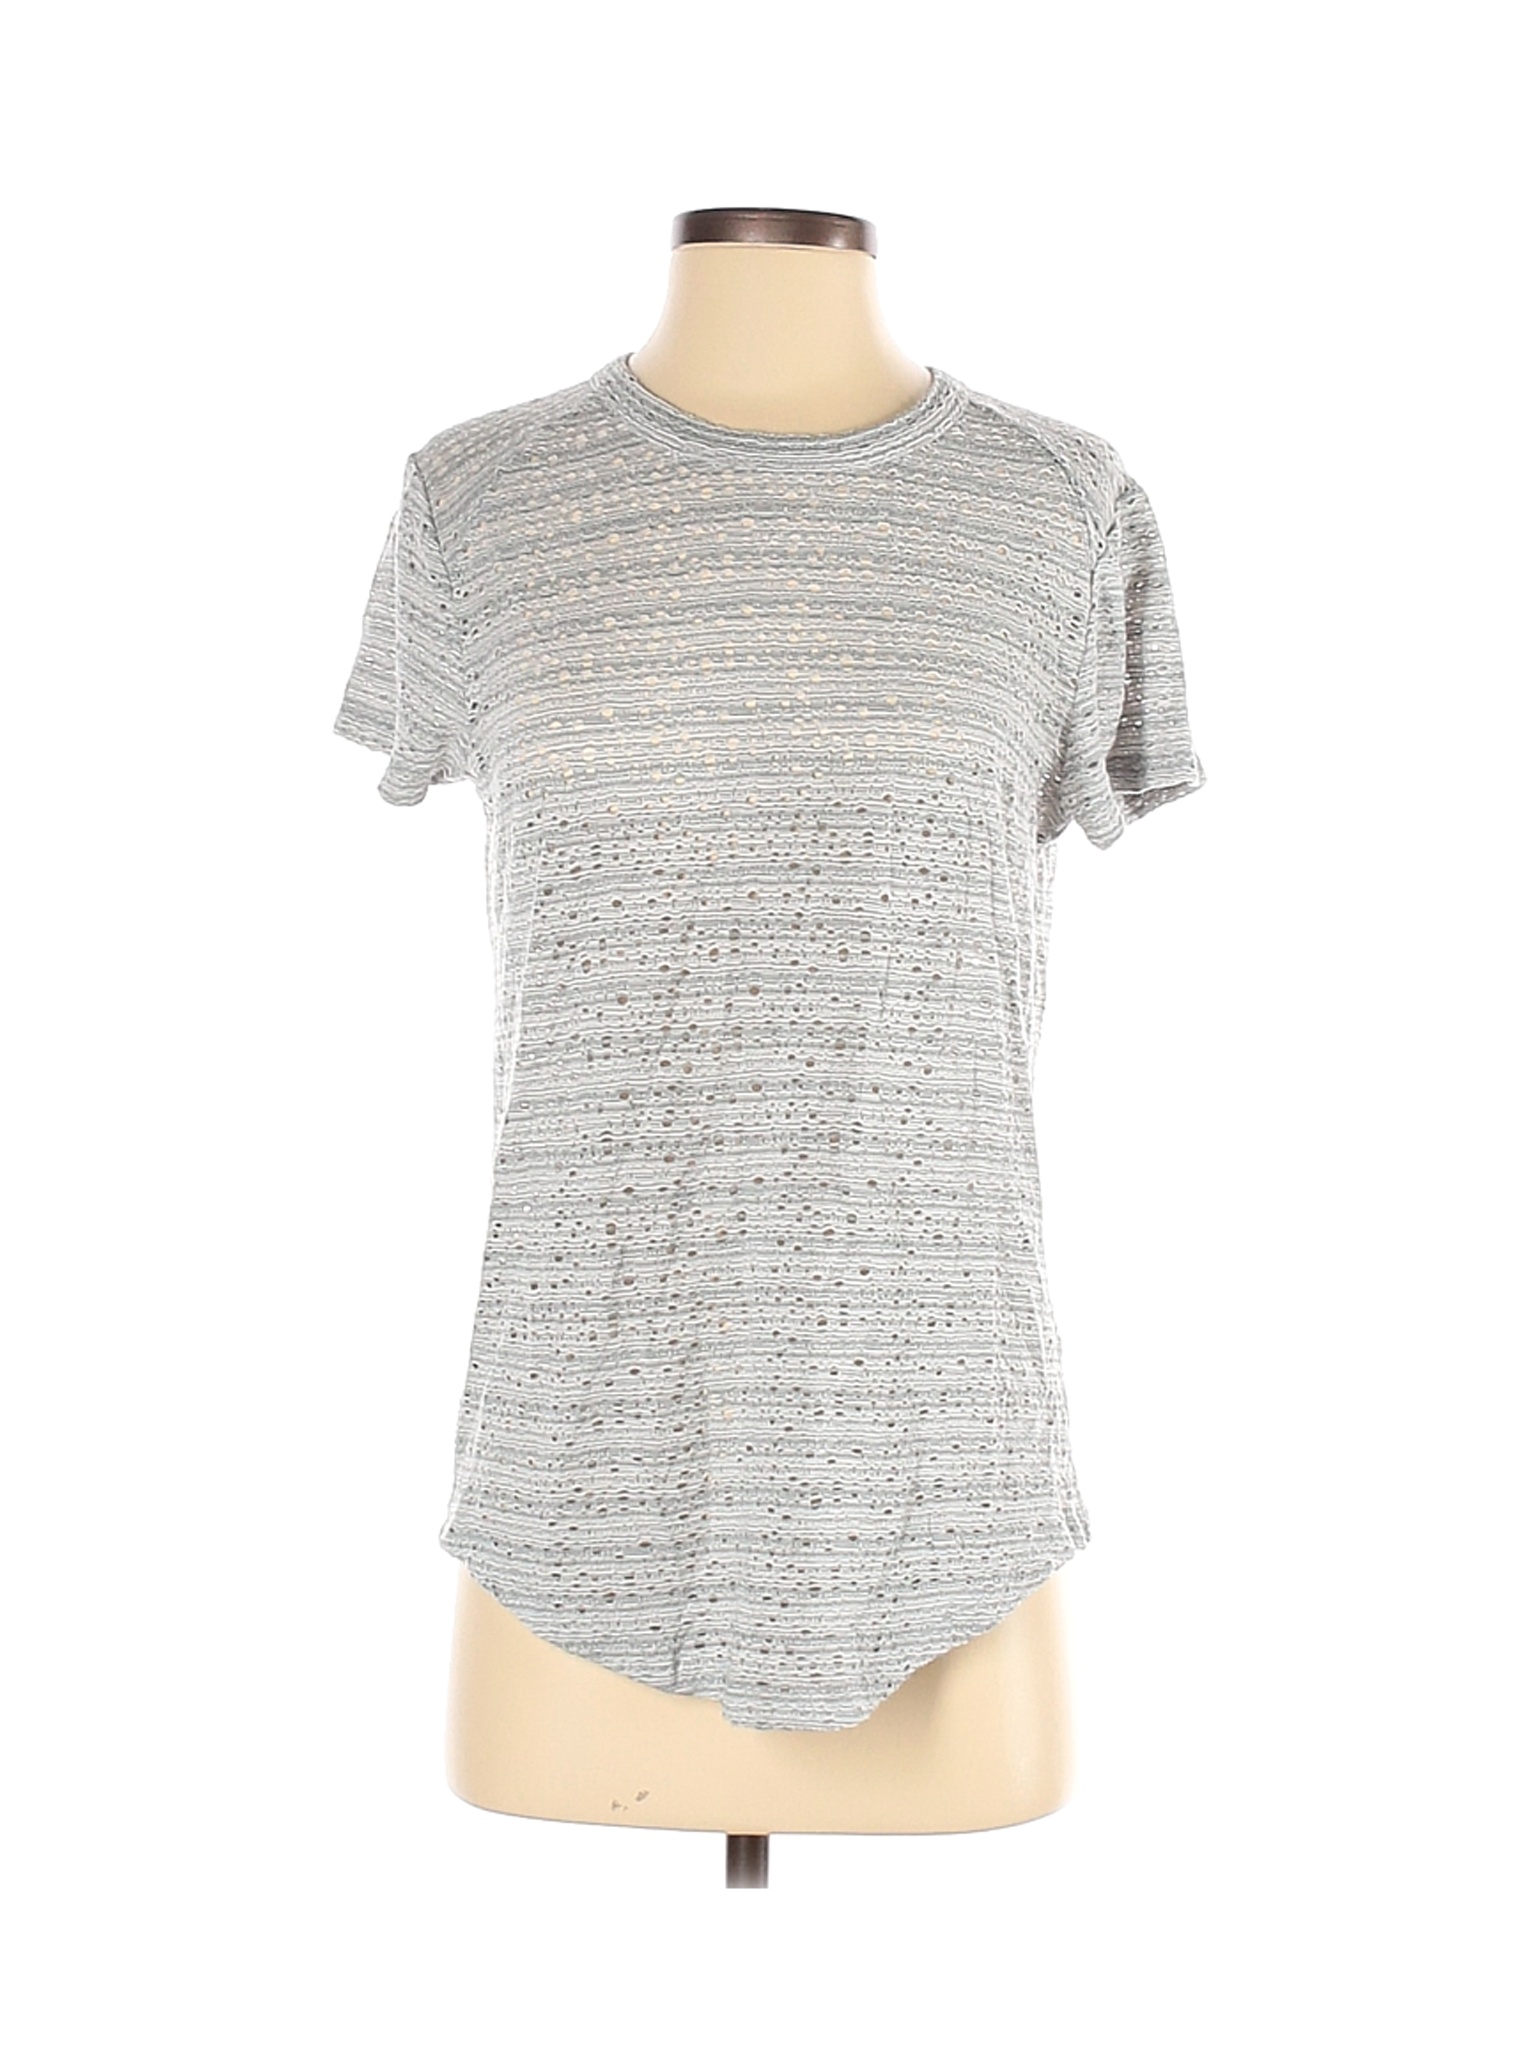 AJ Andrea Jovine Women Gray Short Sleeve Top S | eBay